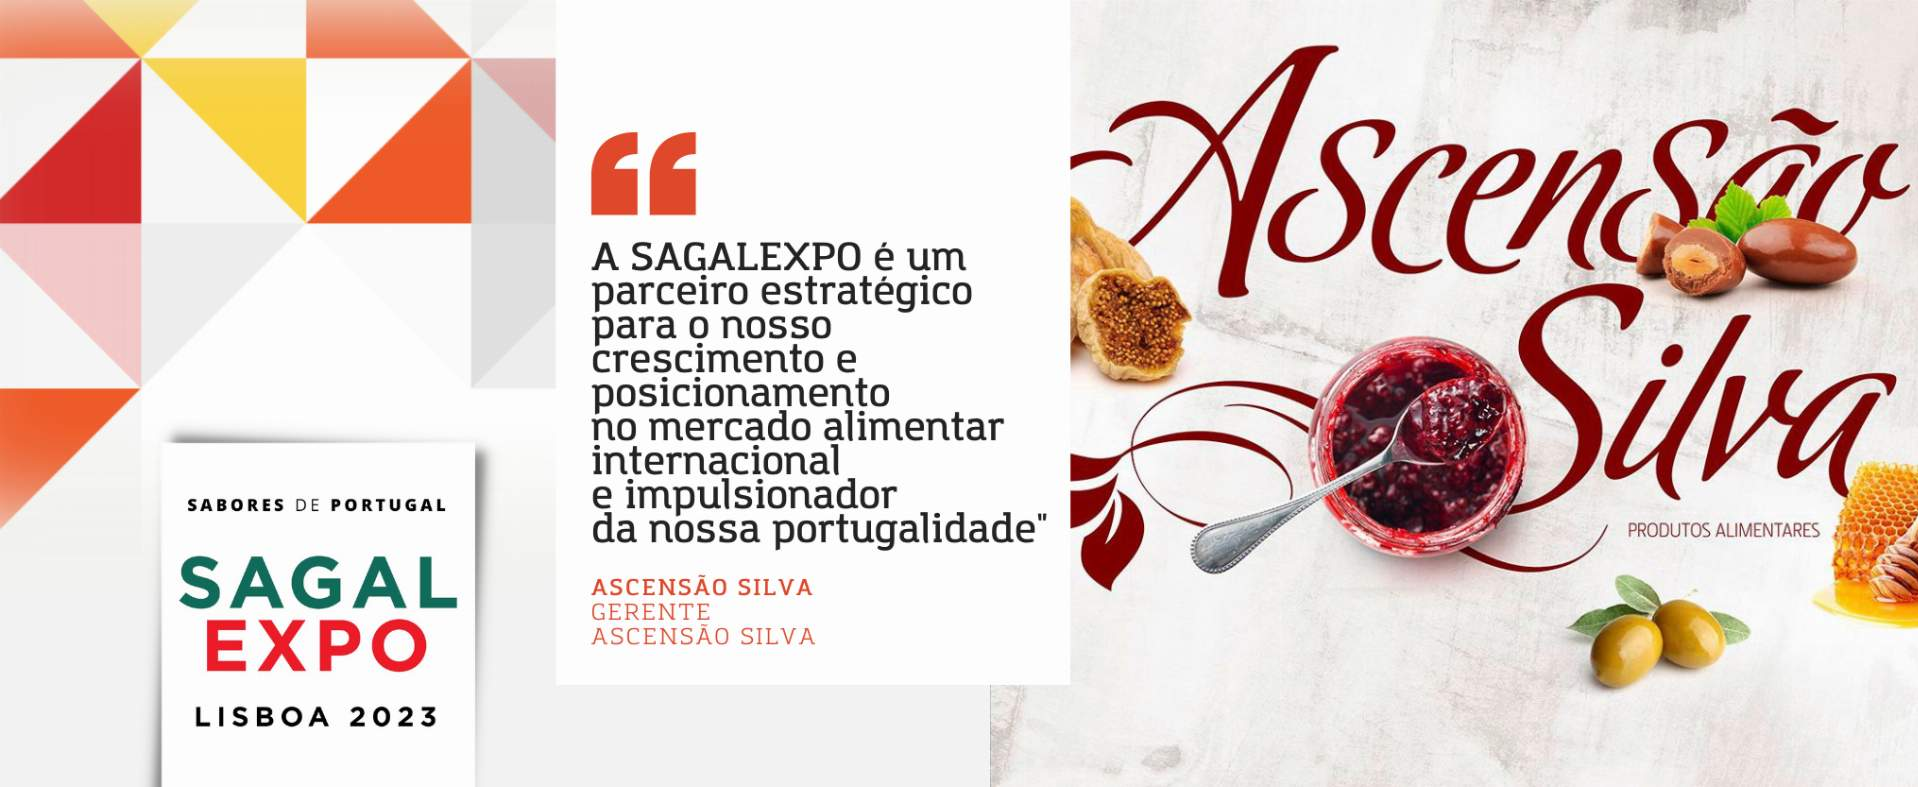 Ascensão Silva: “A SAGALEXPO é um parceiro estratégico para o nosso crescimento e posicionamento no mercado alimentar internacional e impulsionador da nossa portugalidade"